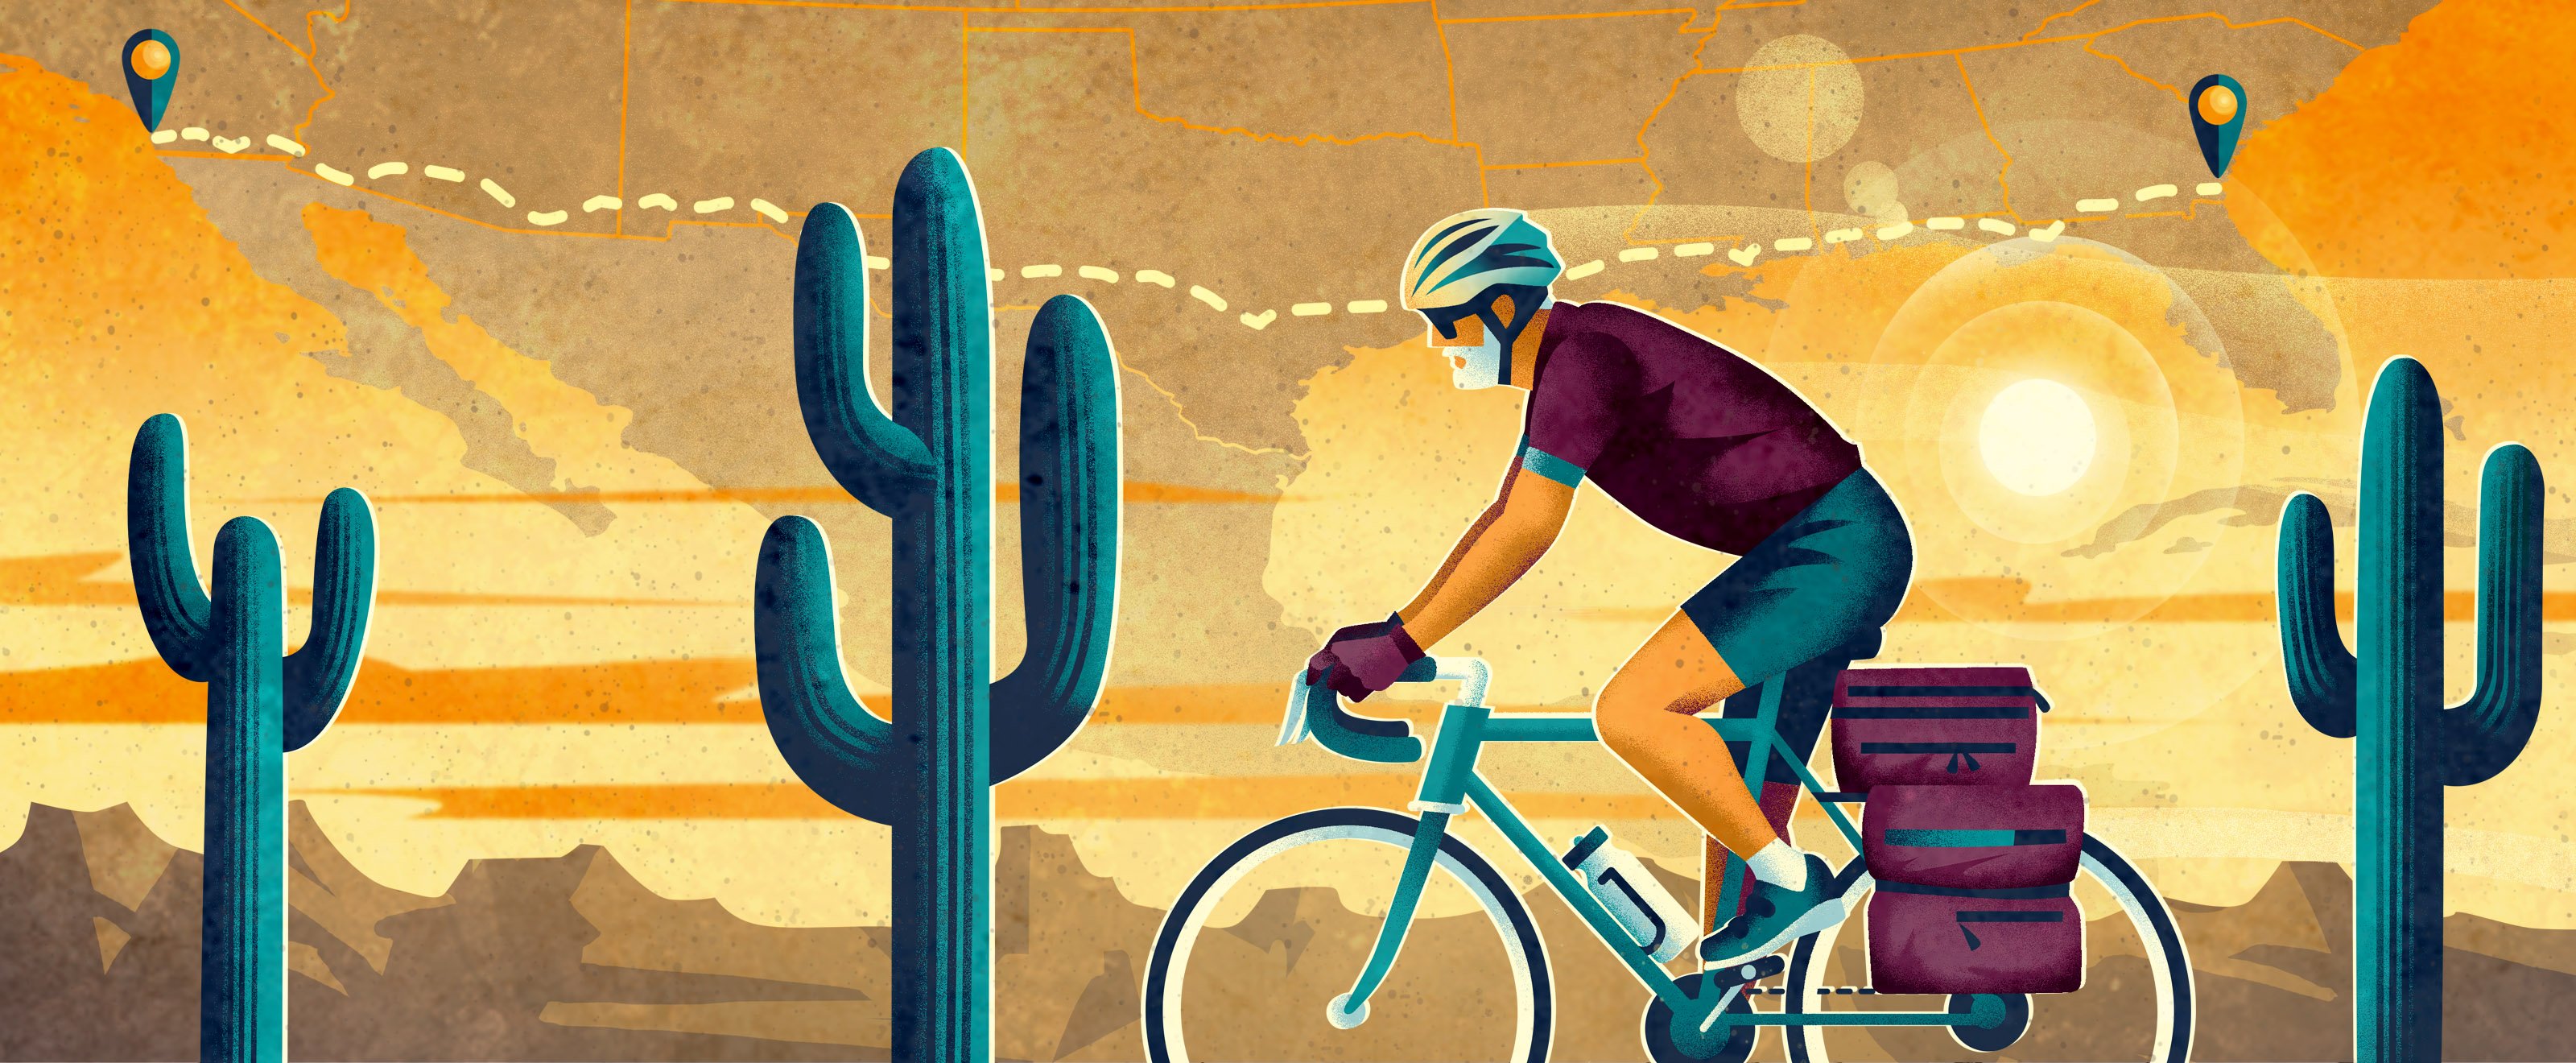 说明一个男人在骑自行车穿过沙漠